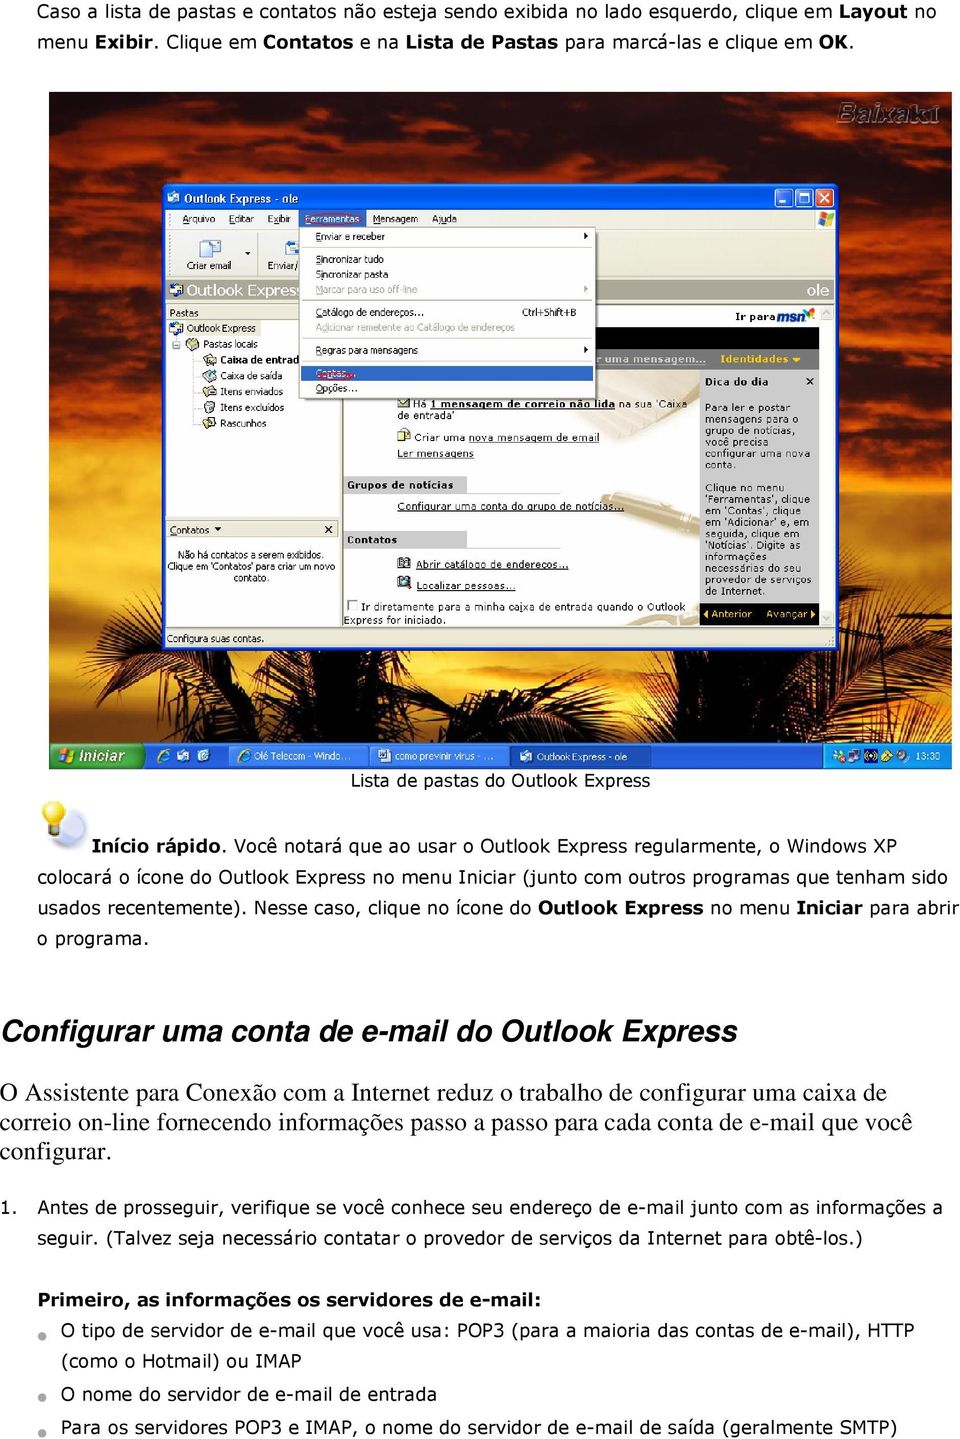 Você notará que ao usar o Outlook Express regularmente, o Windows XP colocará o ícone do Outlook Express no menu Iniciar (junto com outros programas que tenham sido usados recentemente).